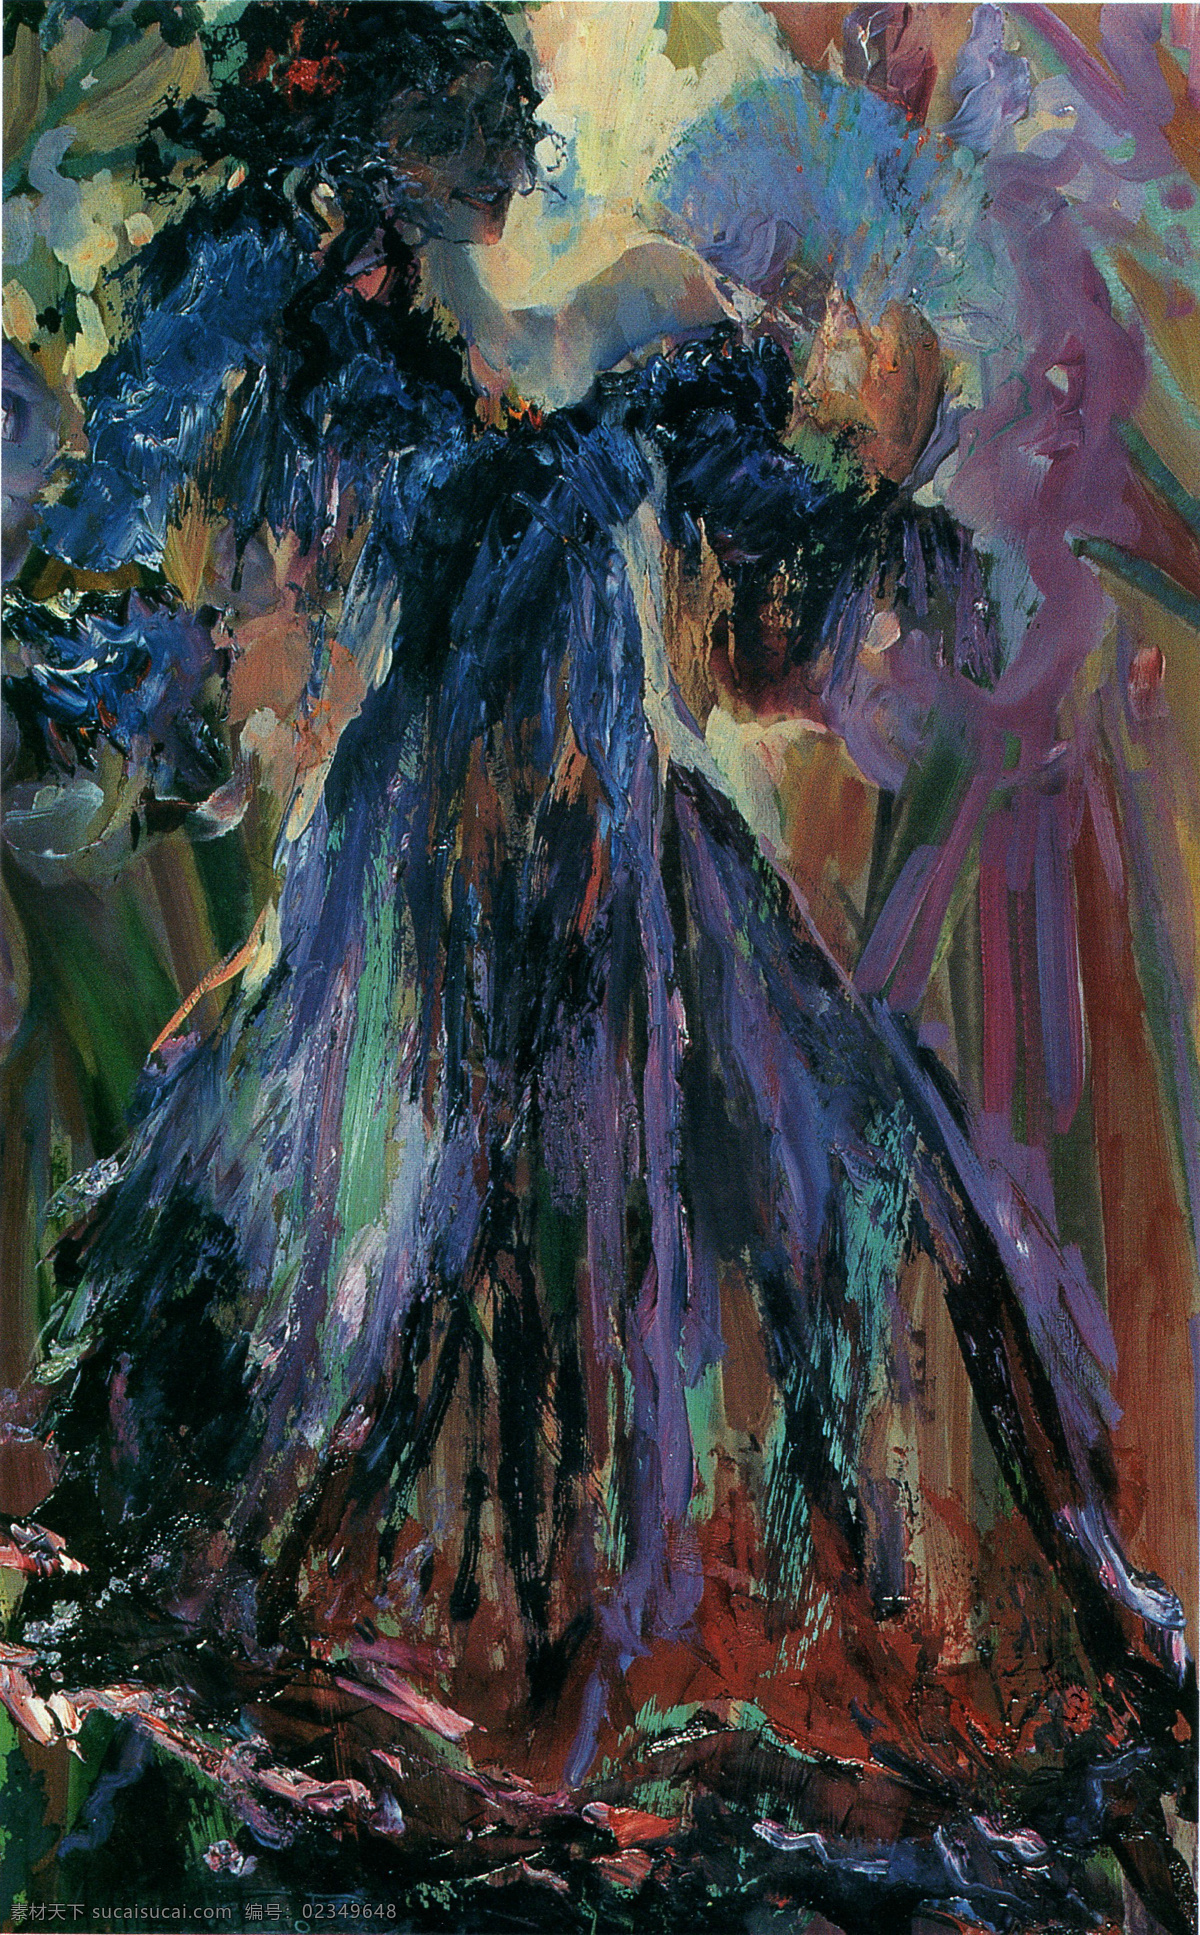 抽象 国外 绘画书法 蓝色 女人 人物 扇子 文化艺术 持扇舞者 乌克兰 青年画家 油画 舞蹈 形体 姿势 作品选 家居装饰素材